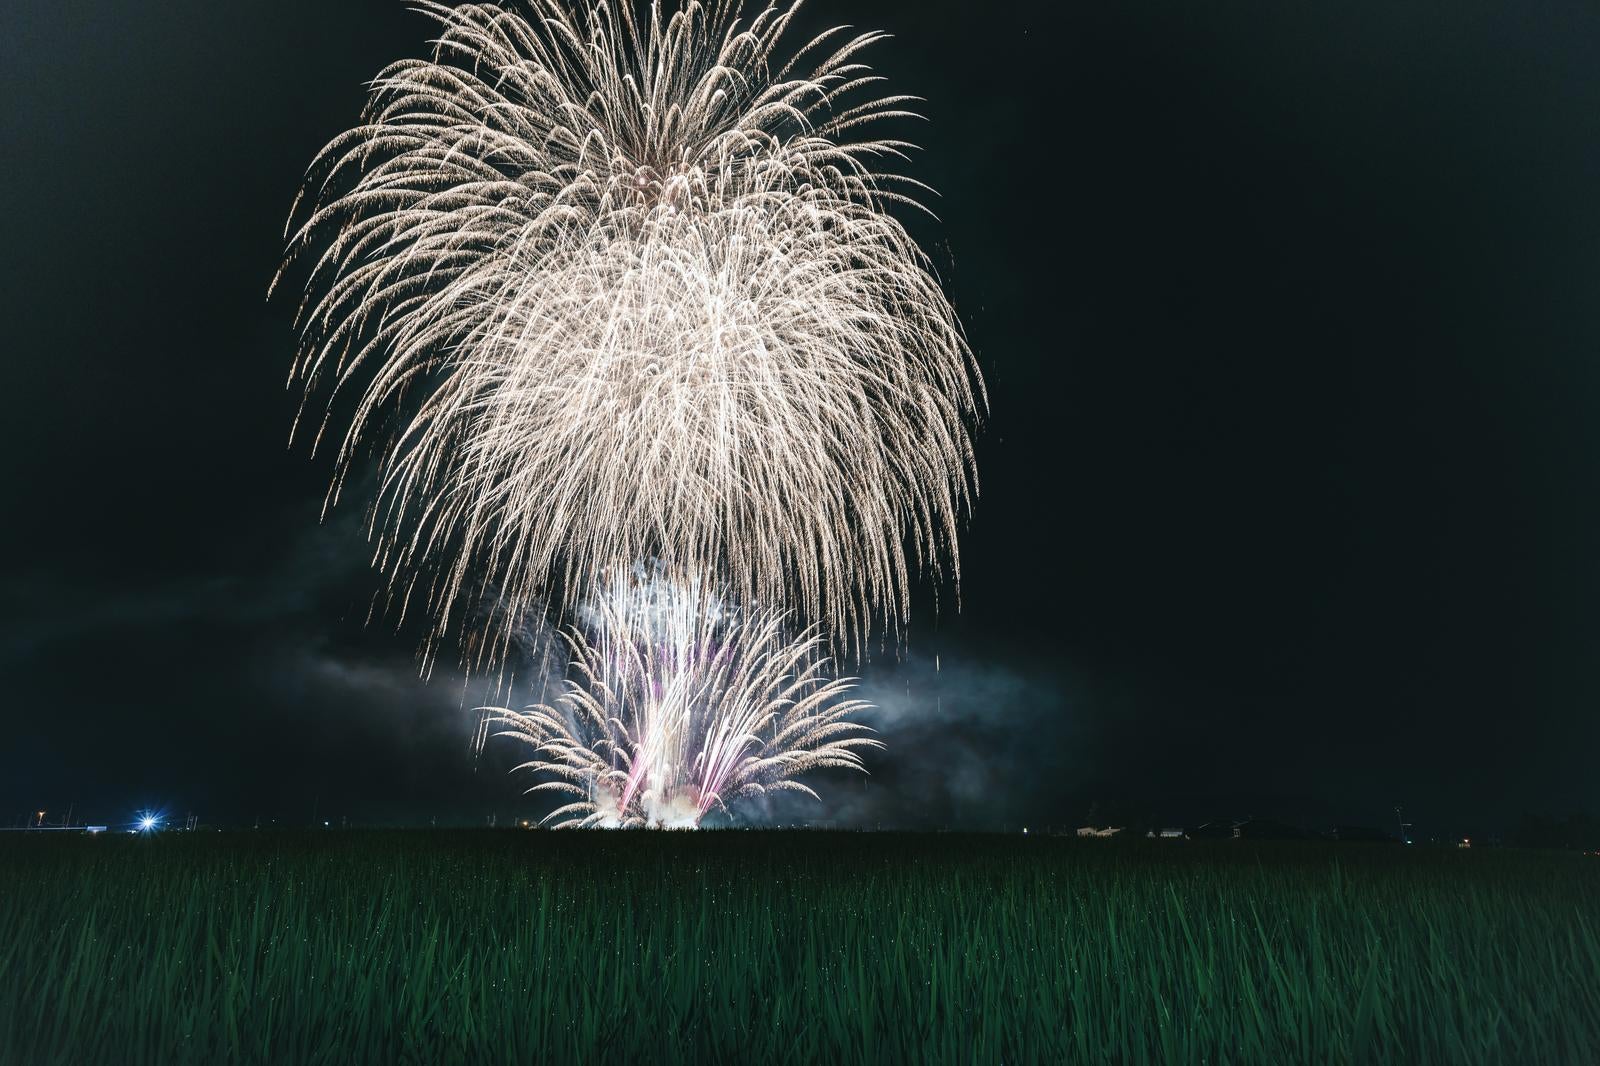 「広角レンズに入りきれないほどの大きさで打ち上げられたフィナーレの花火（おおたま夏祭り）」の写真